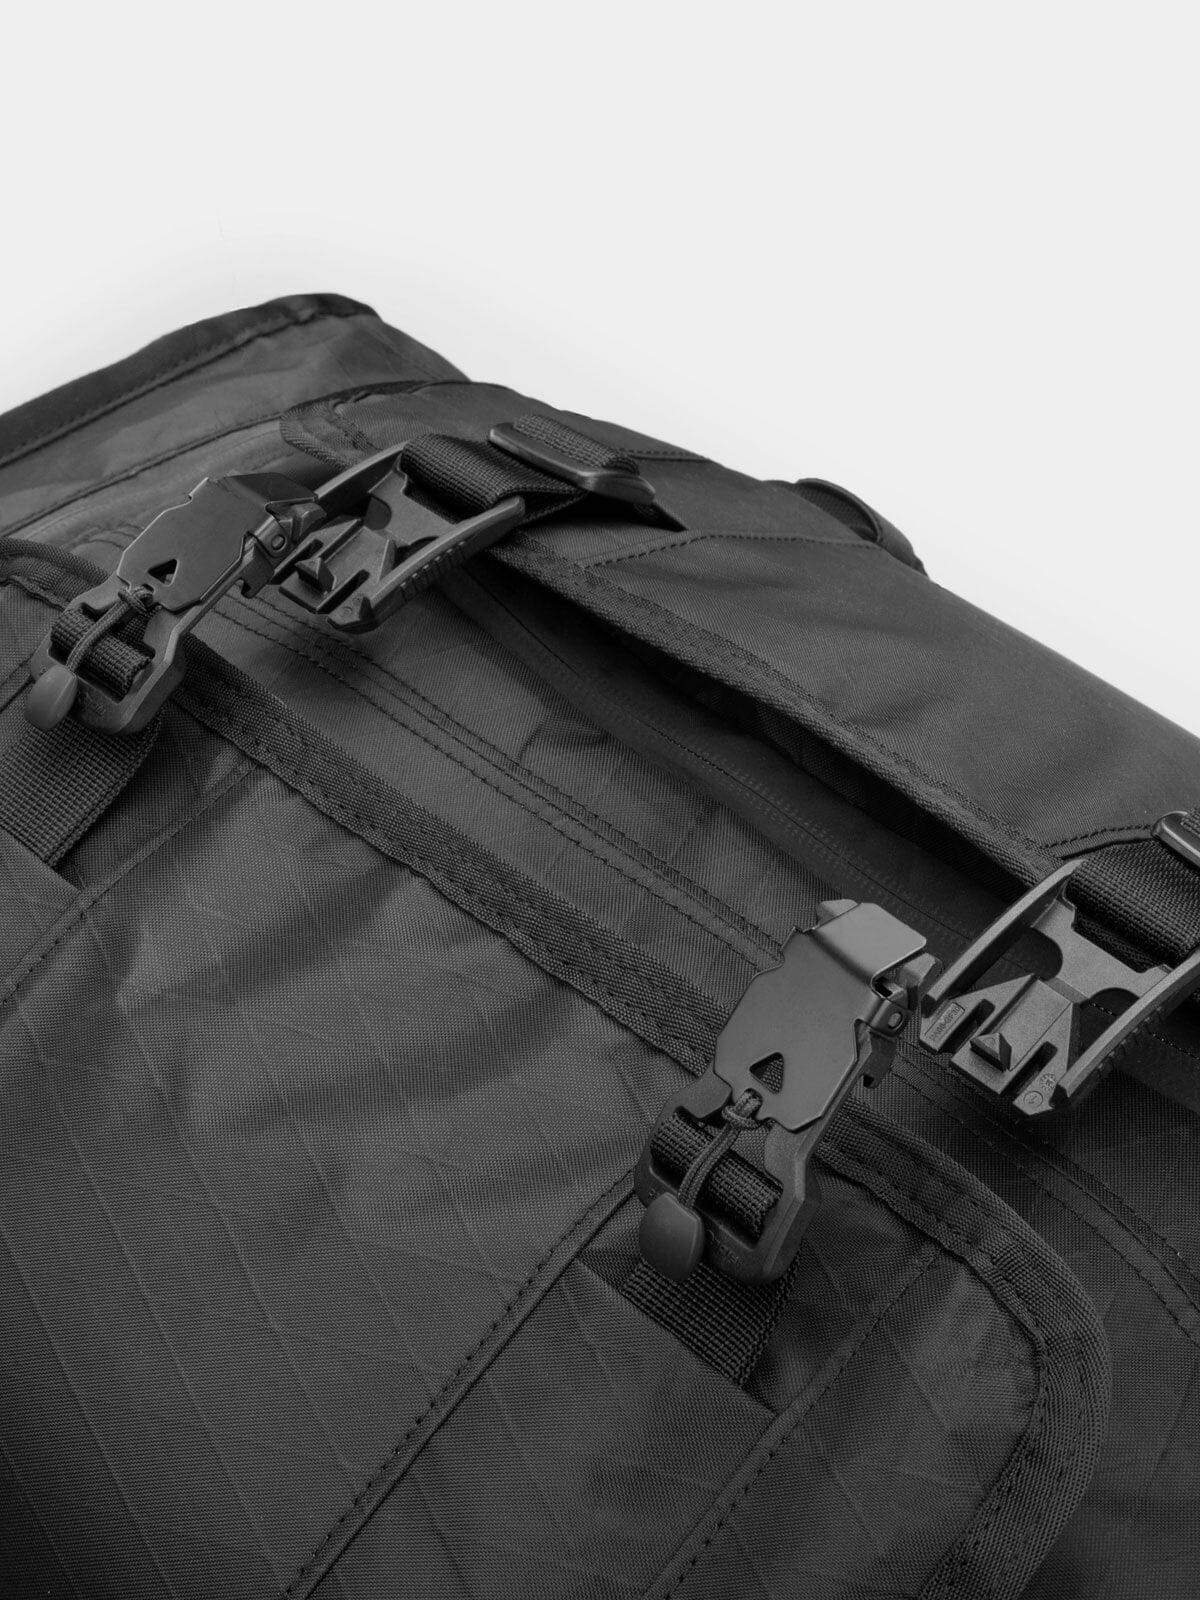 Rhake by Mission Workshop - Säänkestävät laukut ja tekniset vaatteet - San Francisco & Los Angeles - Rakennettu kestämään - ikuinen takuu